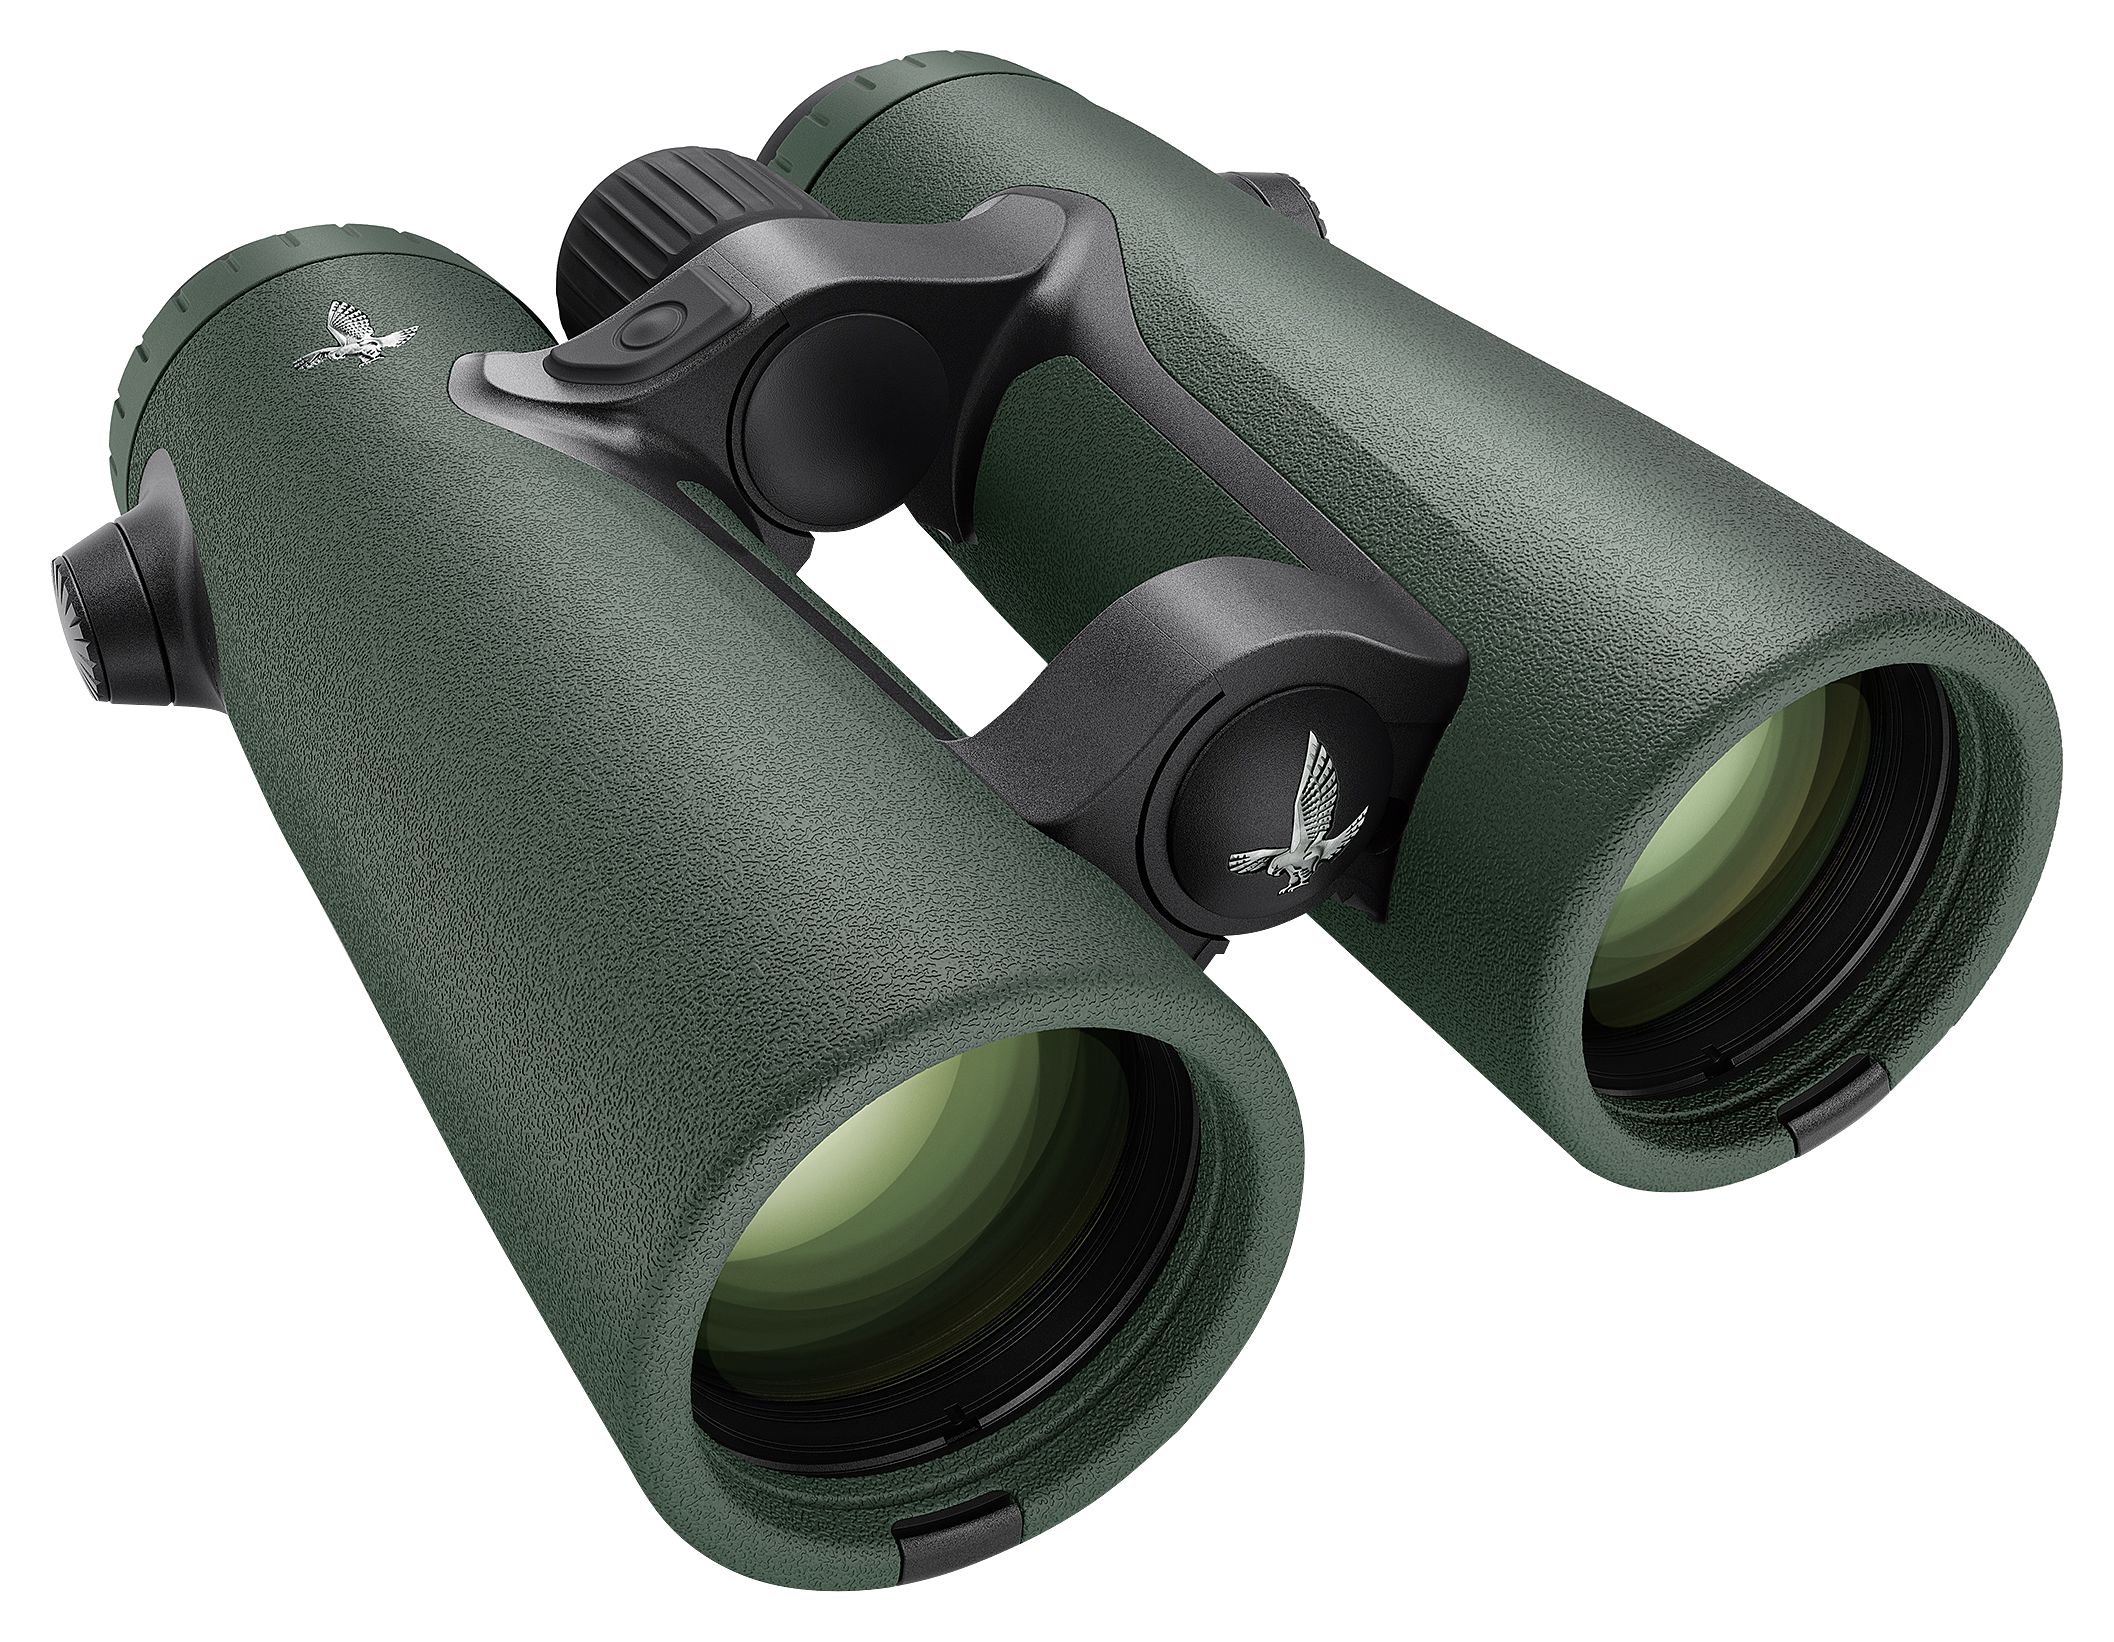 Swarovski EL Range TA Binoculars - 10x42mm - Green